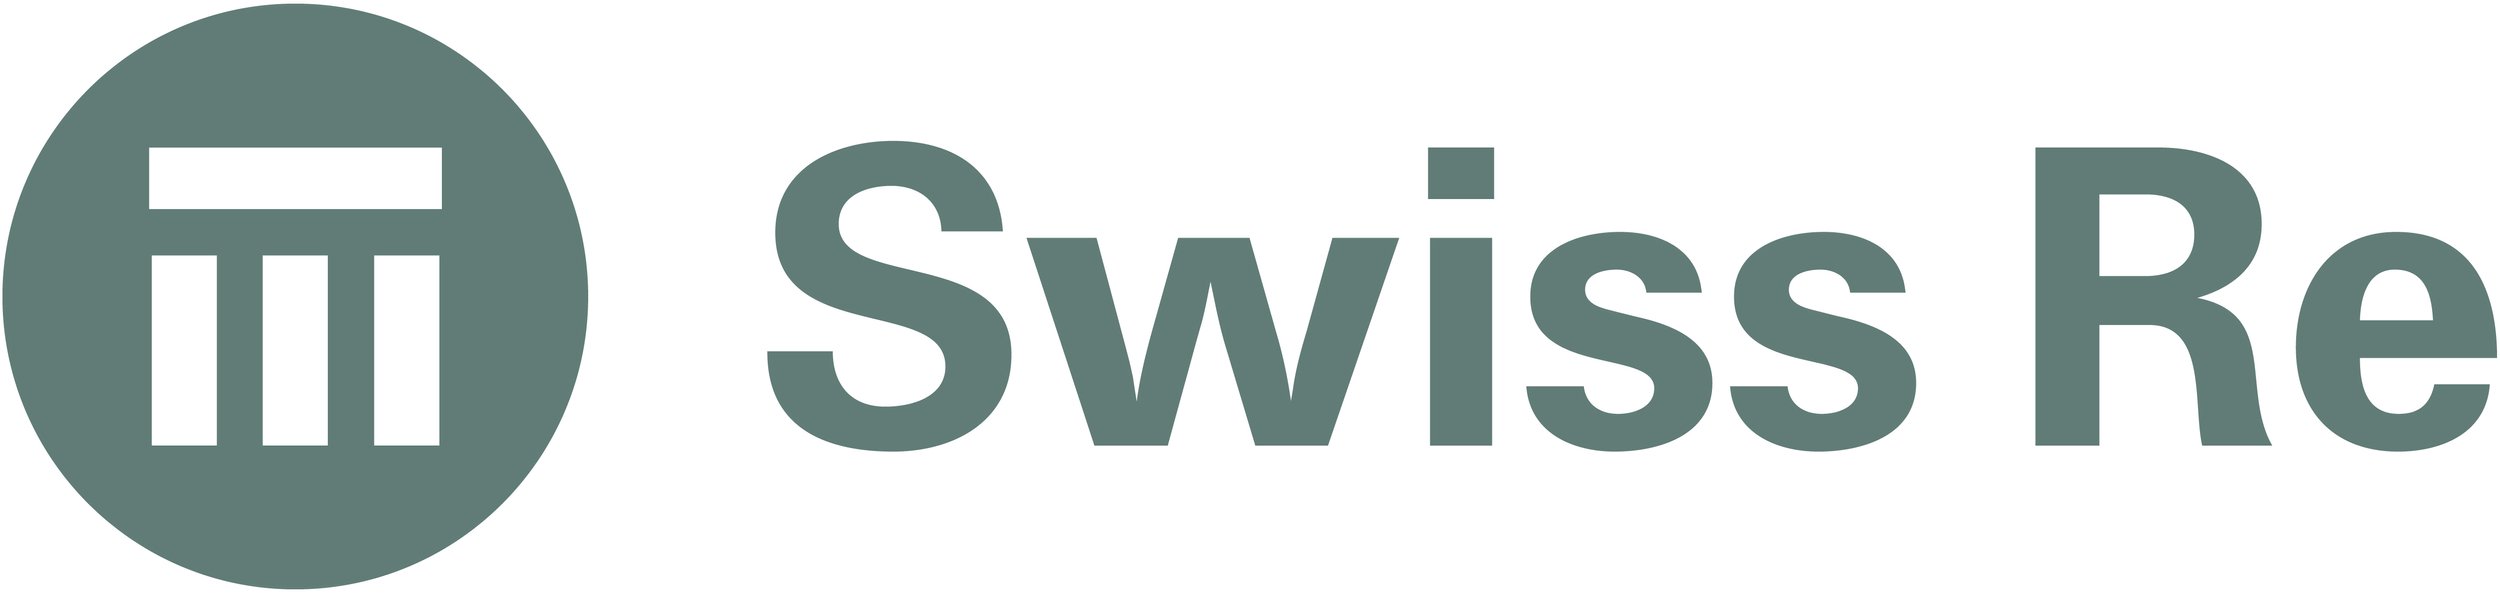 Swiss Re Logo.jpg